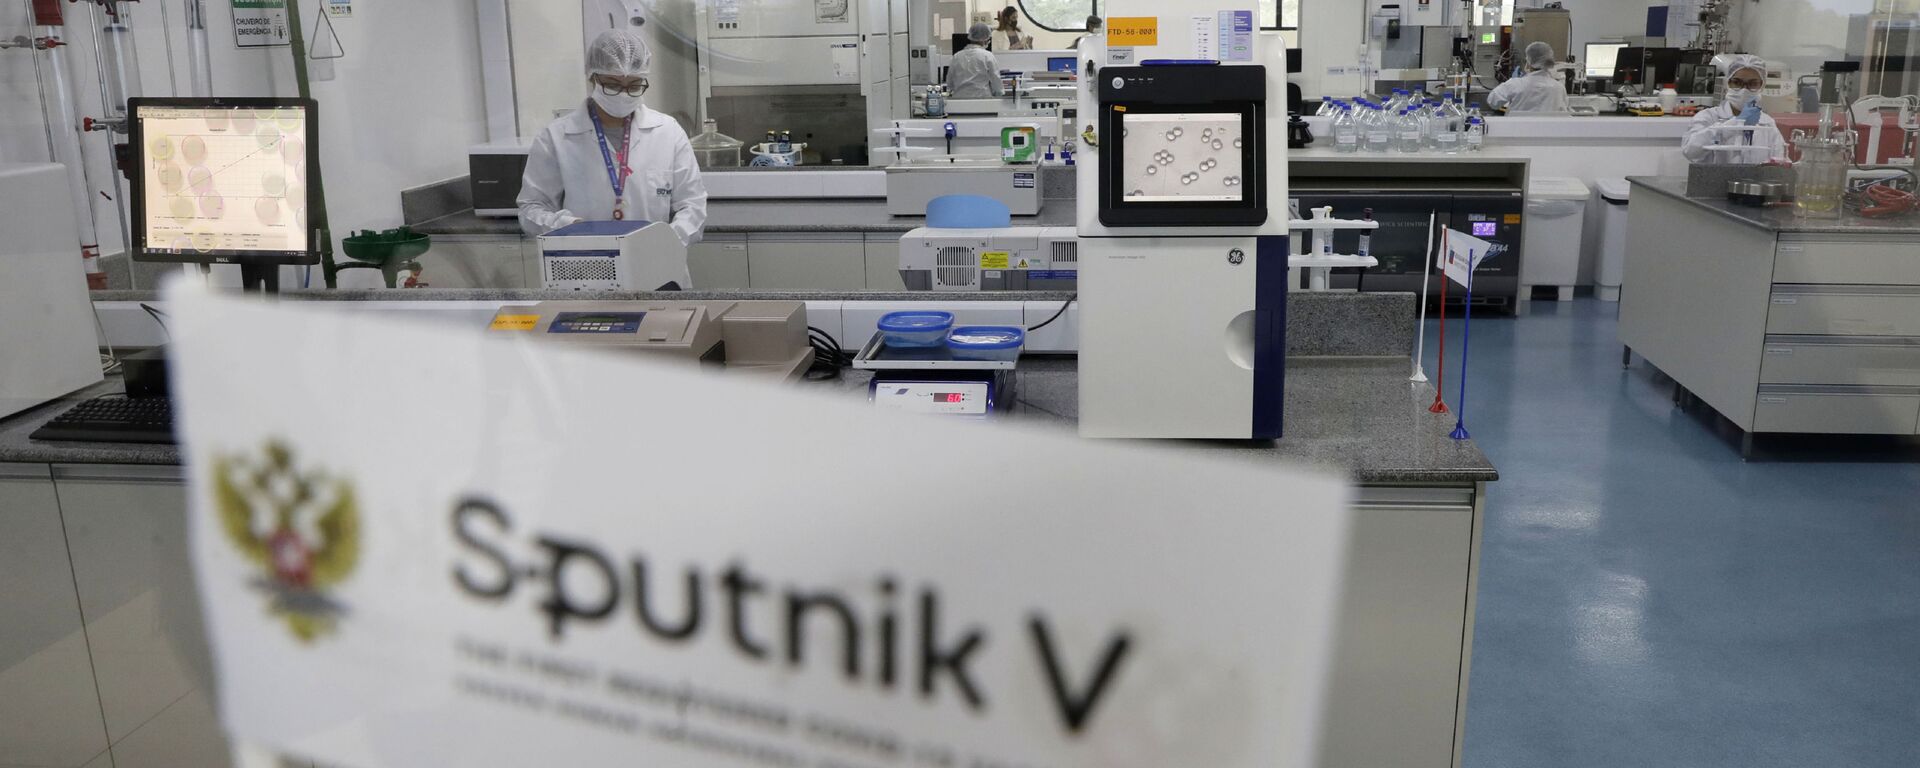 Trabalhadores executam tarefas em laboratório na fase piloto de produção da vacina russa Sputnik V Coronavirus para COVID-19 na empresa farmacêutica União Química em Brasília, Brasil, 25 de janeiro de 2021 - Sputnik Brasil, 1920, 25.05.2022